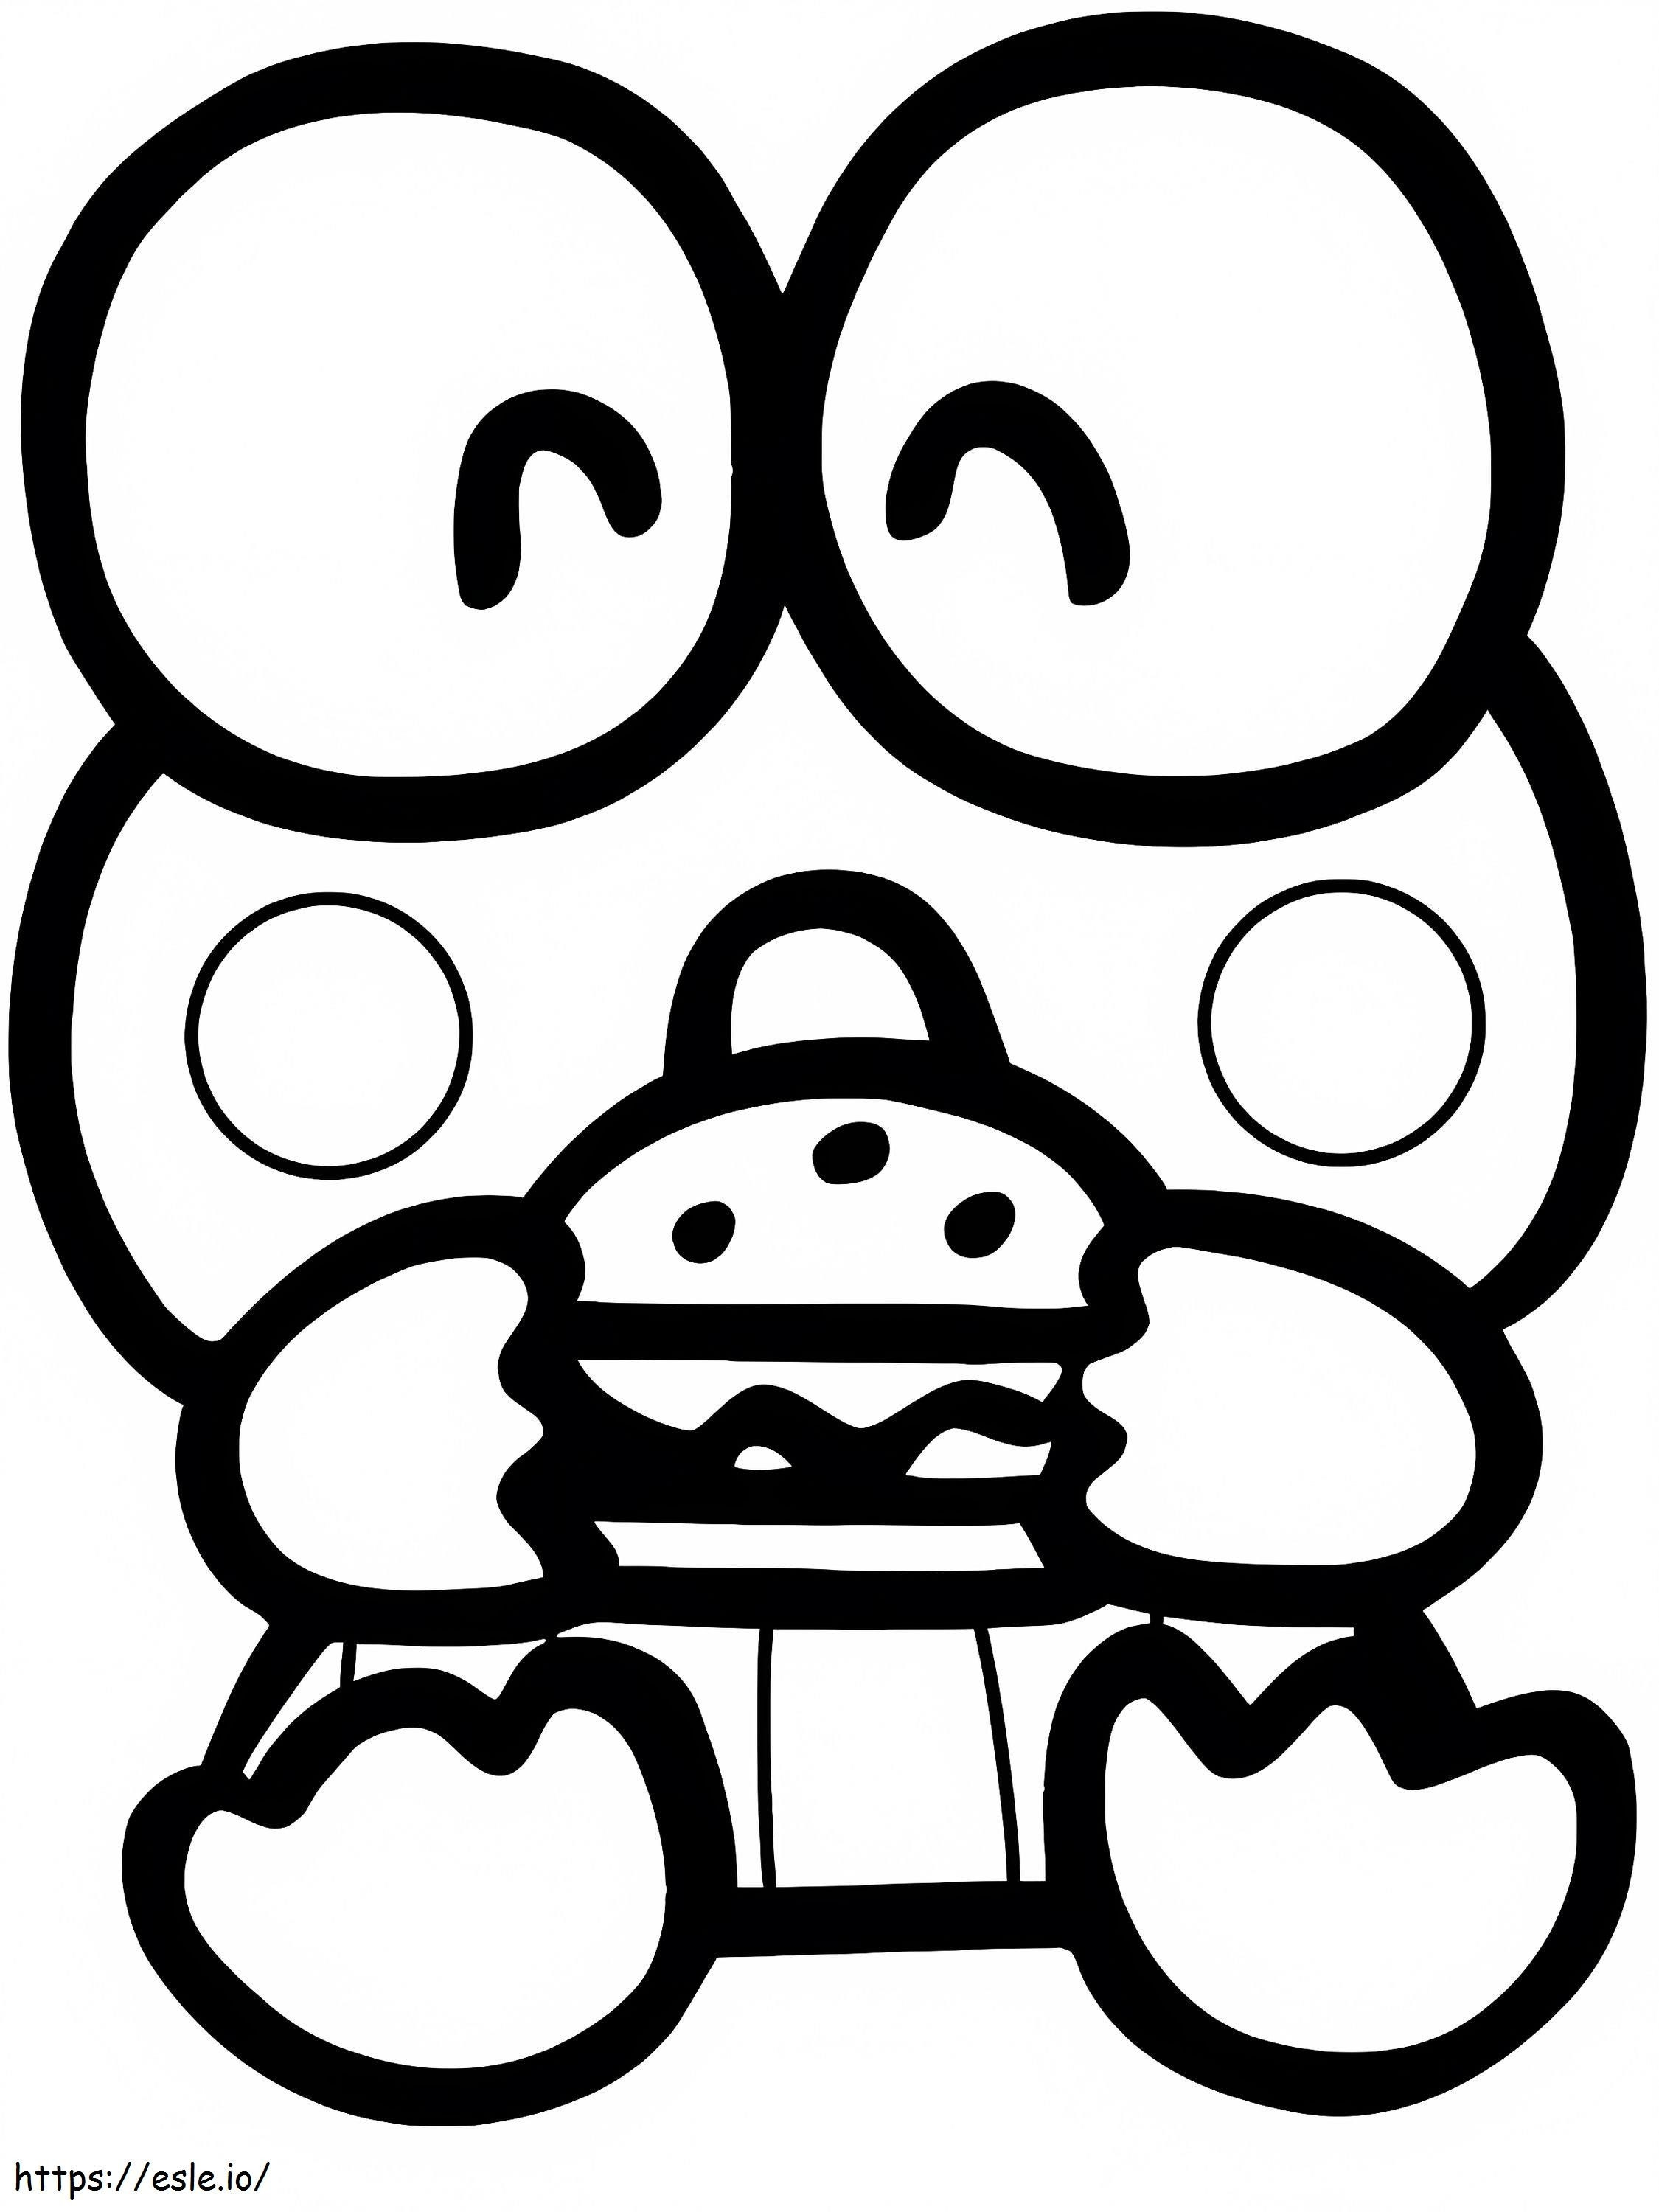 Keroppi Eating Hamburger coloring page